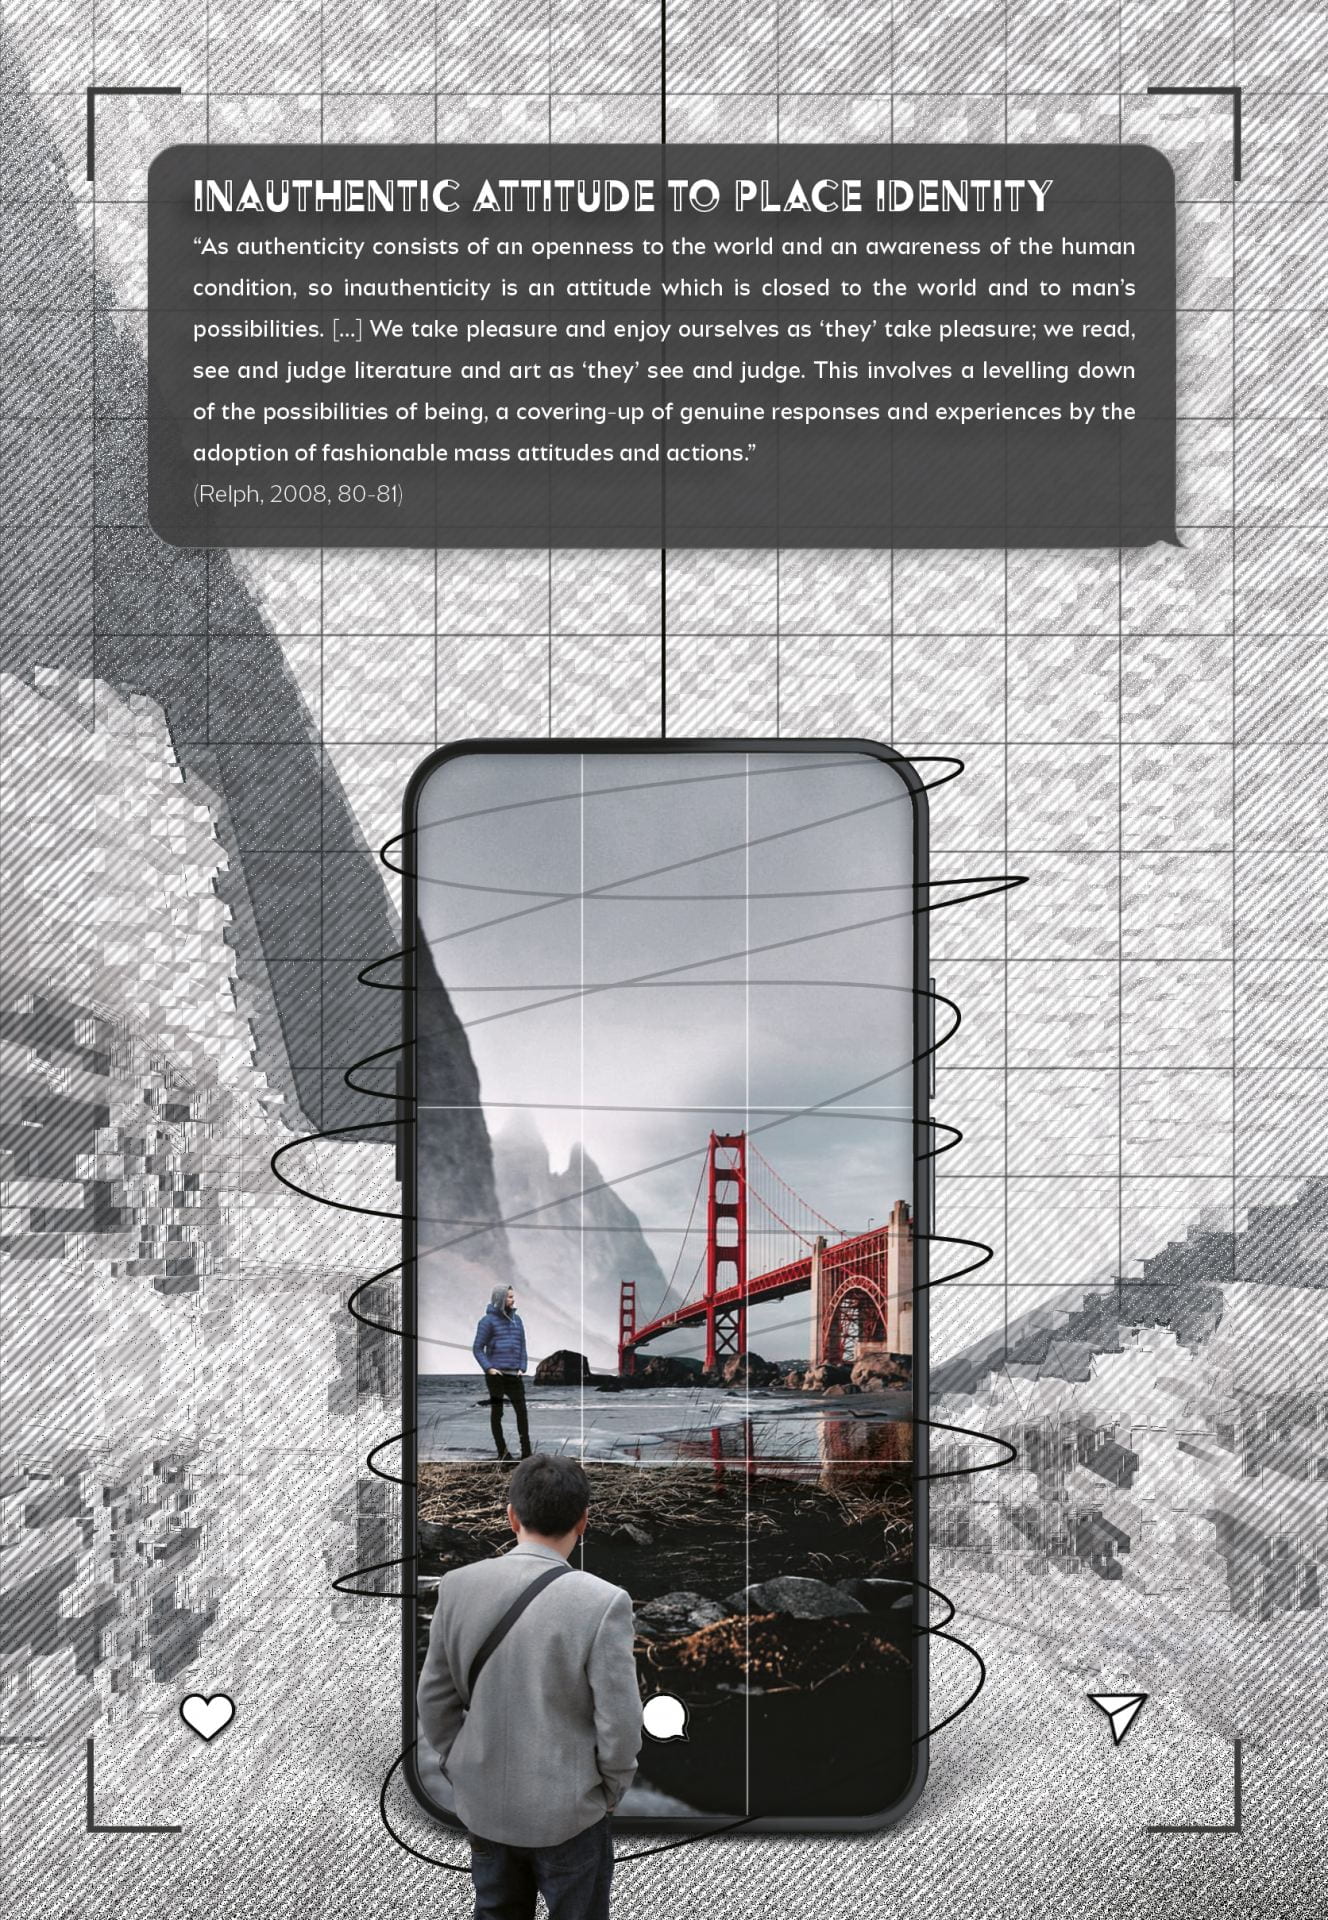 Concept of viewing a bridge through a phone.